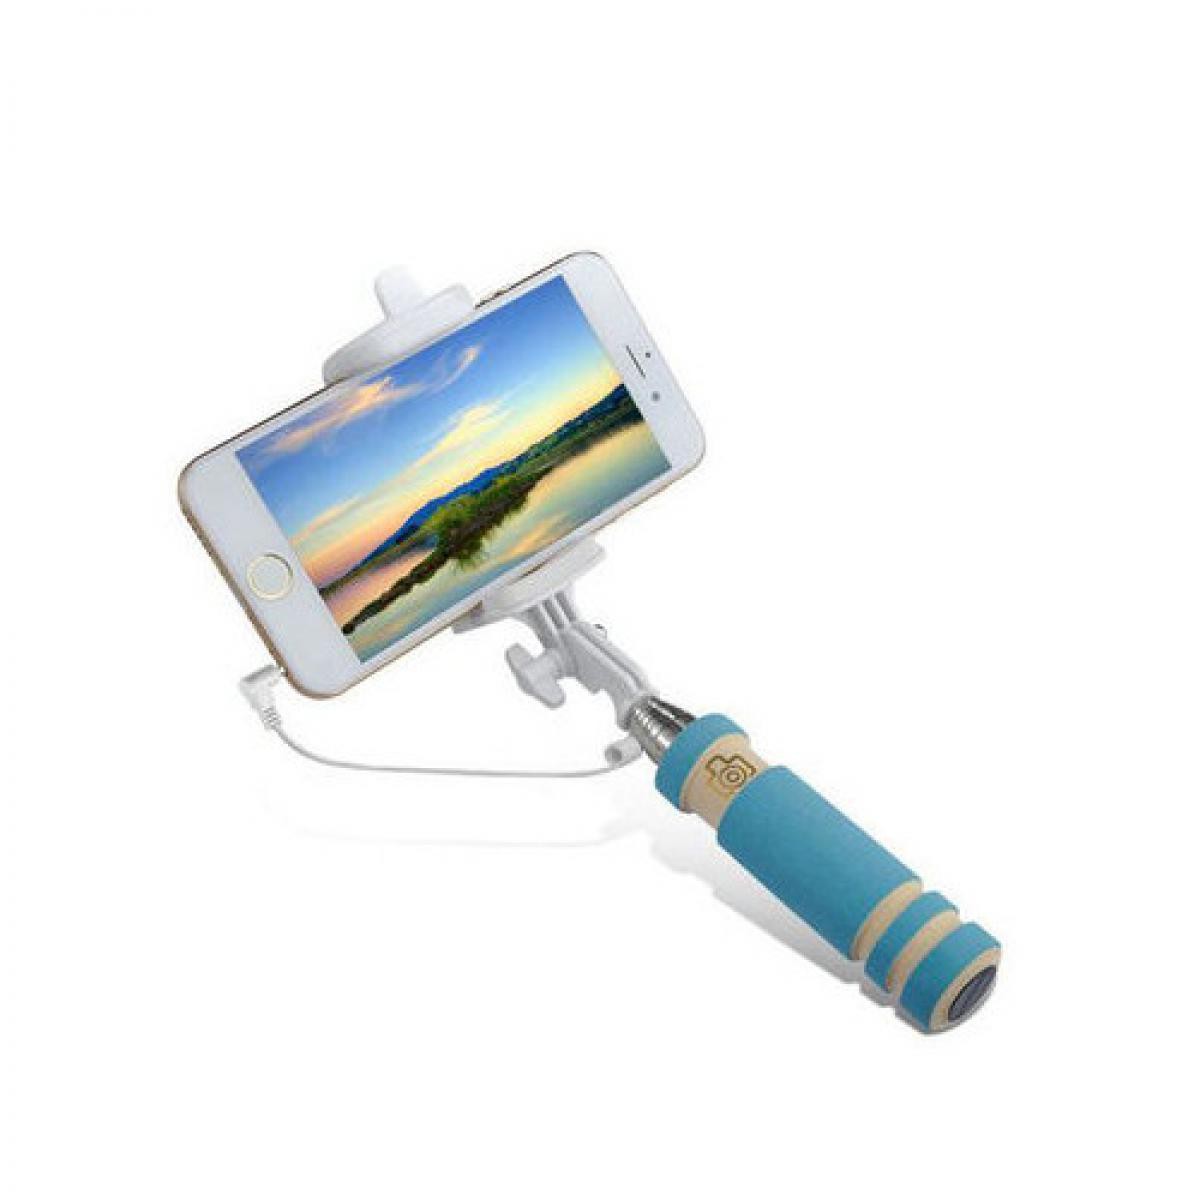 Shot - Mini Perche Selfie pour "IPHONE 12 Mini"avec Cable Jack Selfie Stick IOS Reglable Bouton Photo (BLEU) - Autres accessoires smartphone